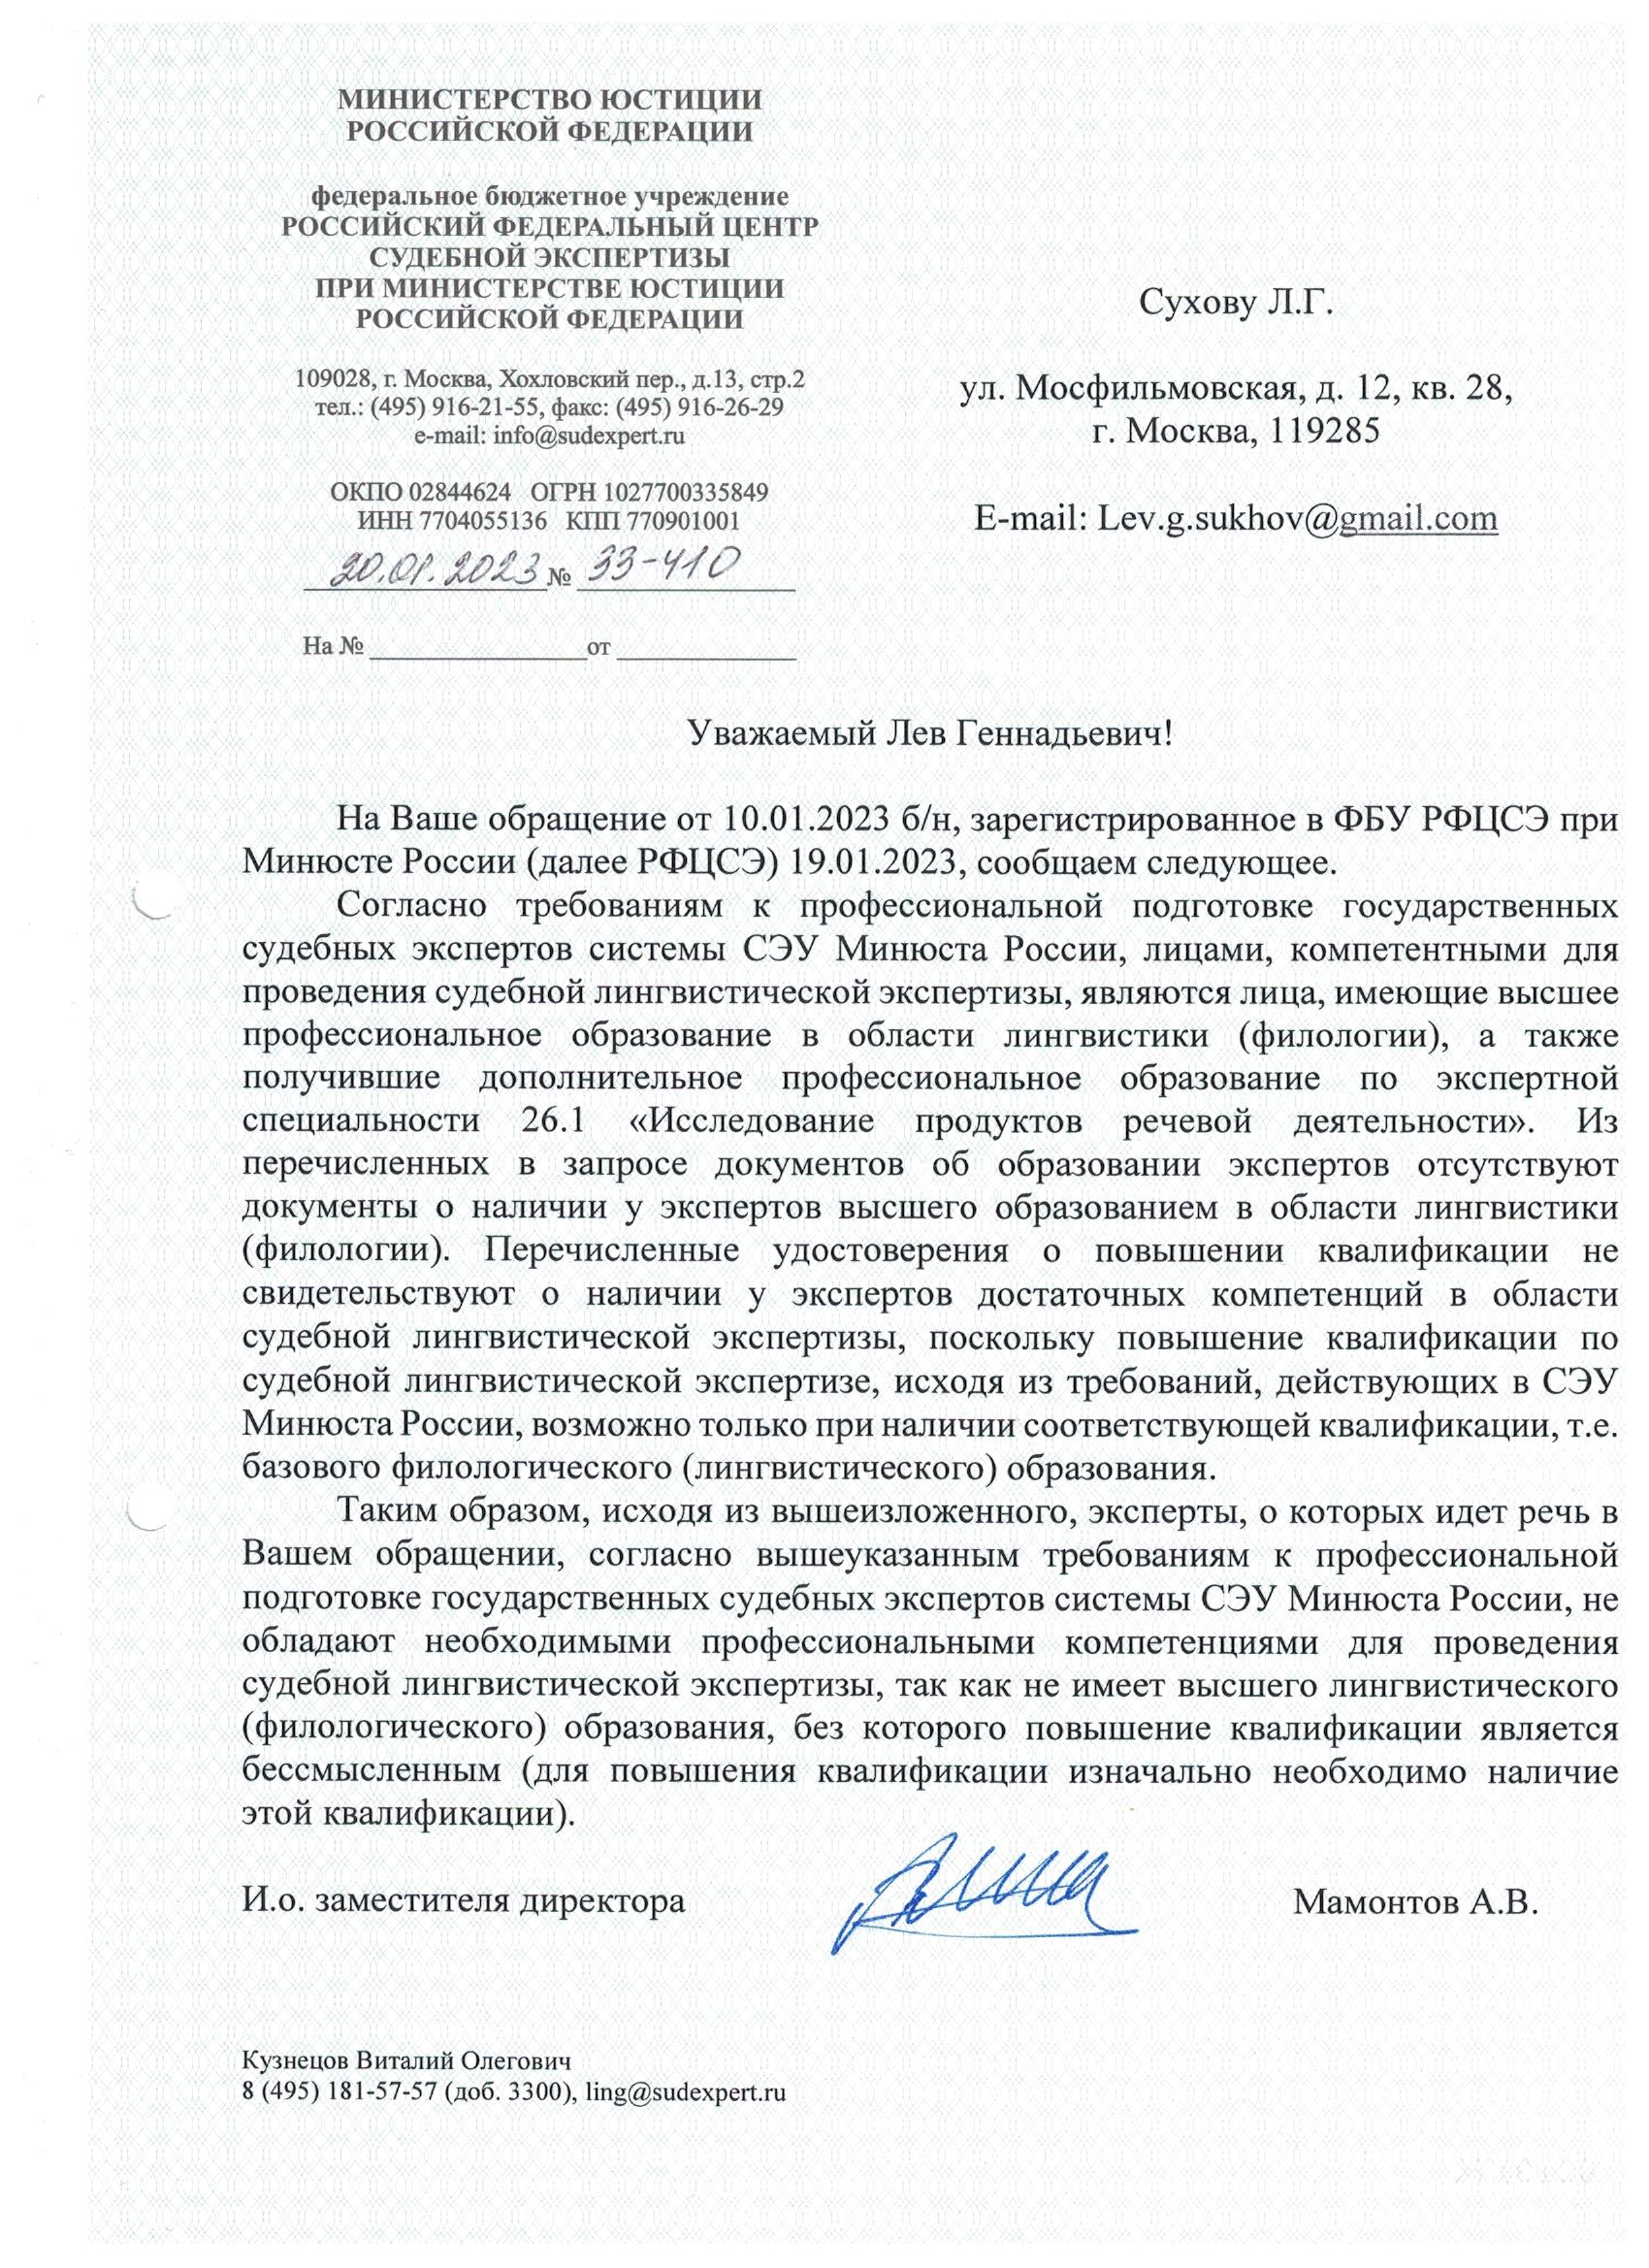 Фамильный трайб Россинских, или судебное дело Льва Сухова